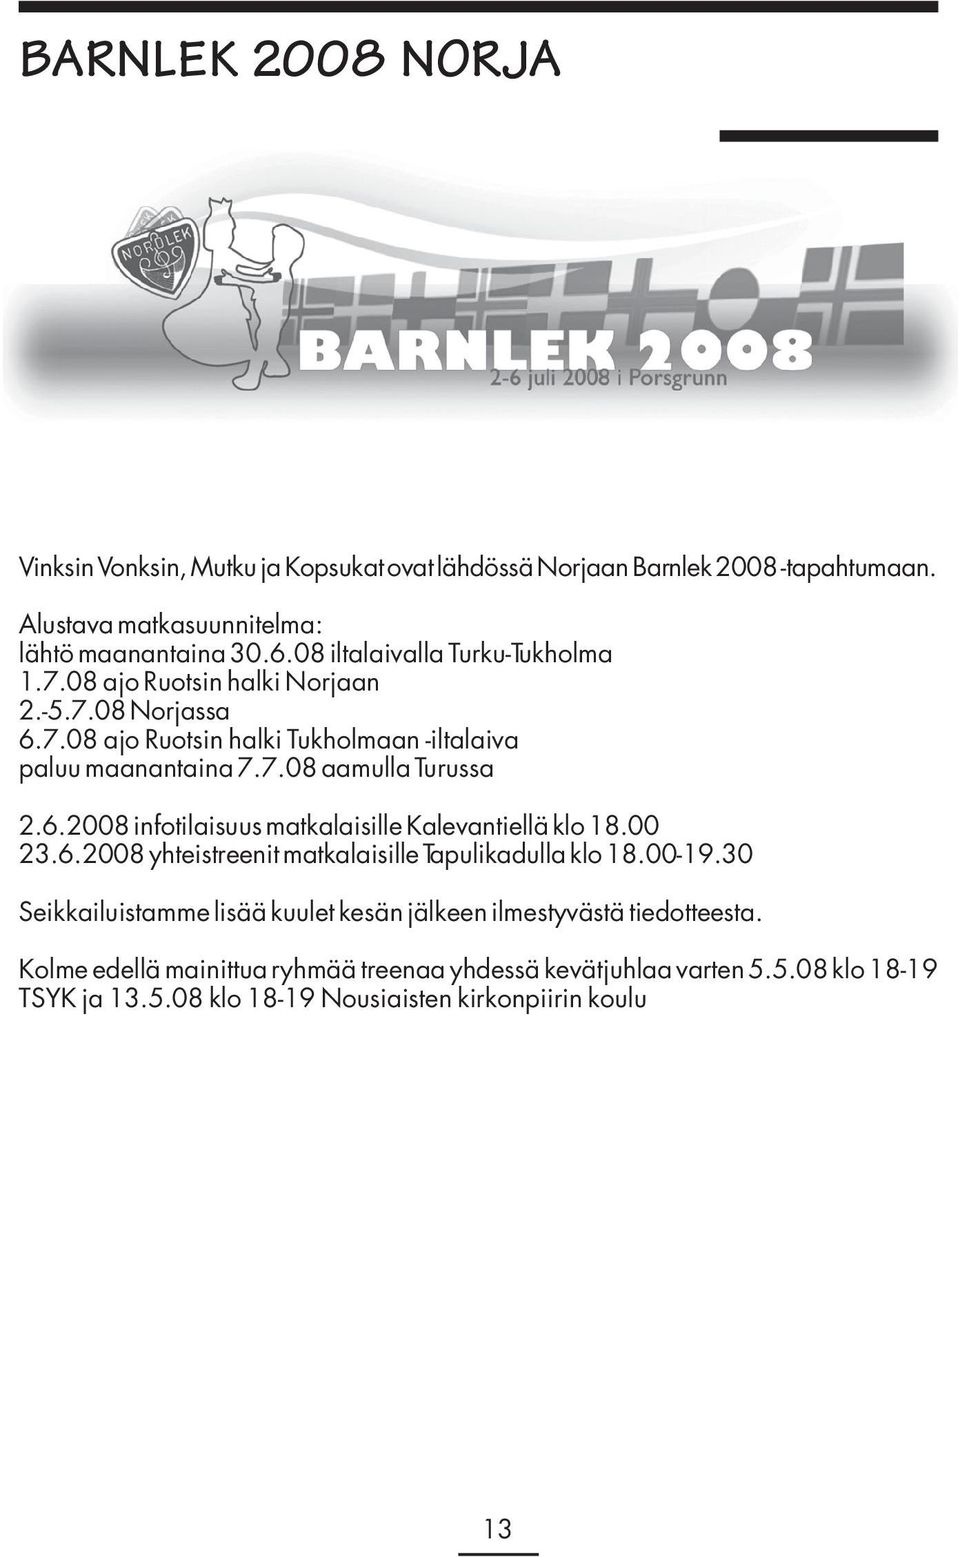 6.2008 infotilaisuus matkalaisille Kalevantiellä klo 18.00 23.6.2008 yhteistreenit matkalaisille Tapulikadulla klo 18.00-19.